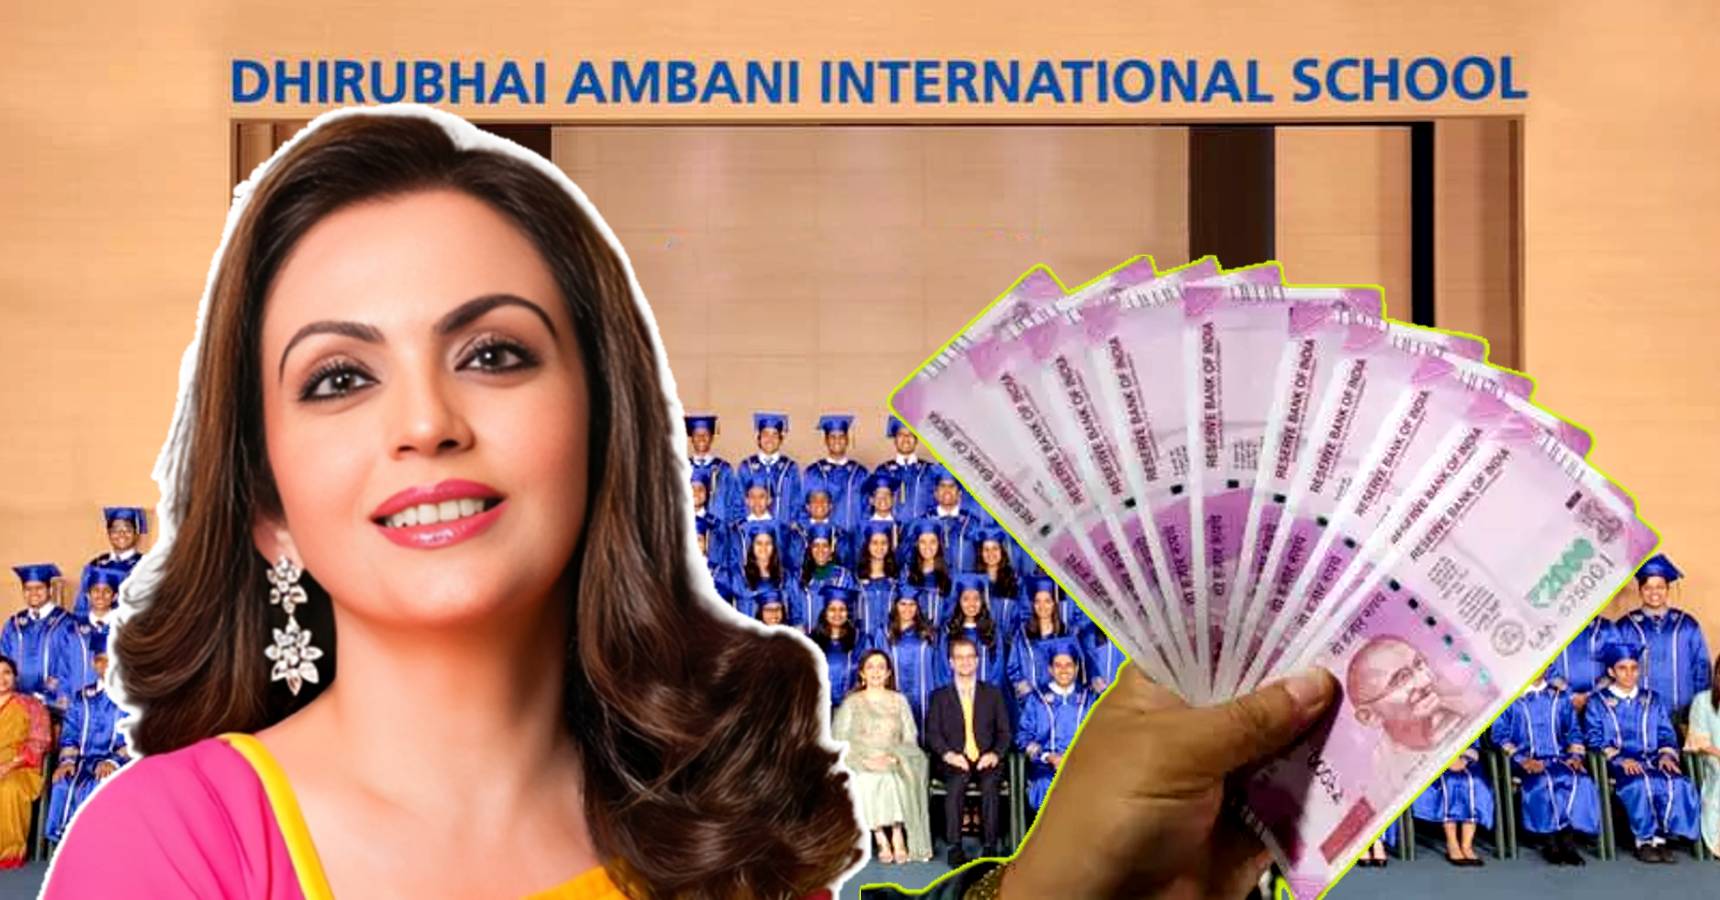 Dhirubhai Ambani International School, Dhirubhai Ambani International School fees